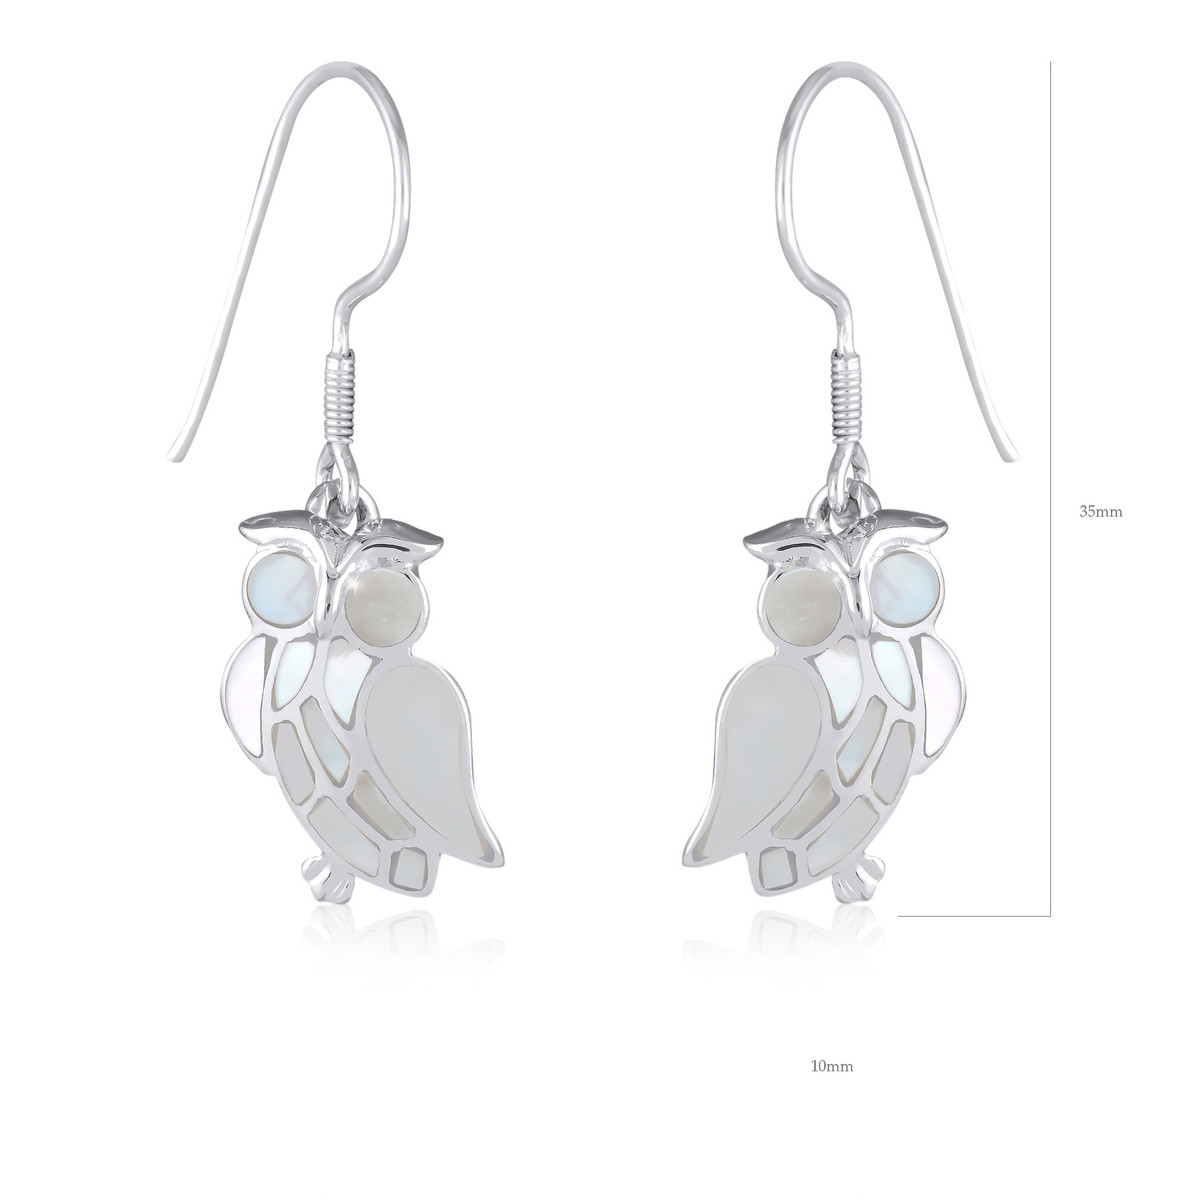 Bijoux de créateurs en argent, des boucles d'oreille pendantes en Hibou-Chouette de nacre blanche et argent 925-000 - vue 3